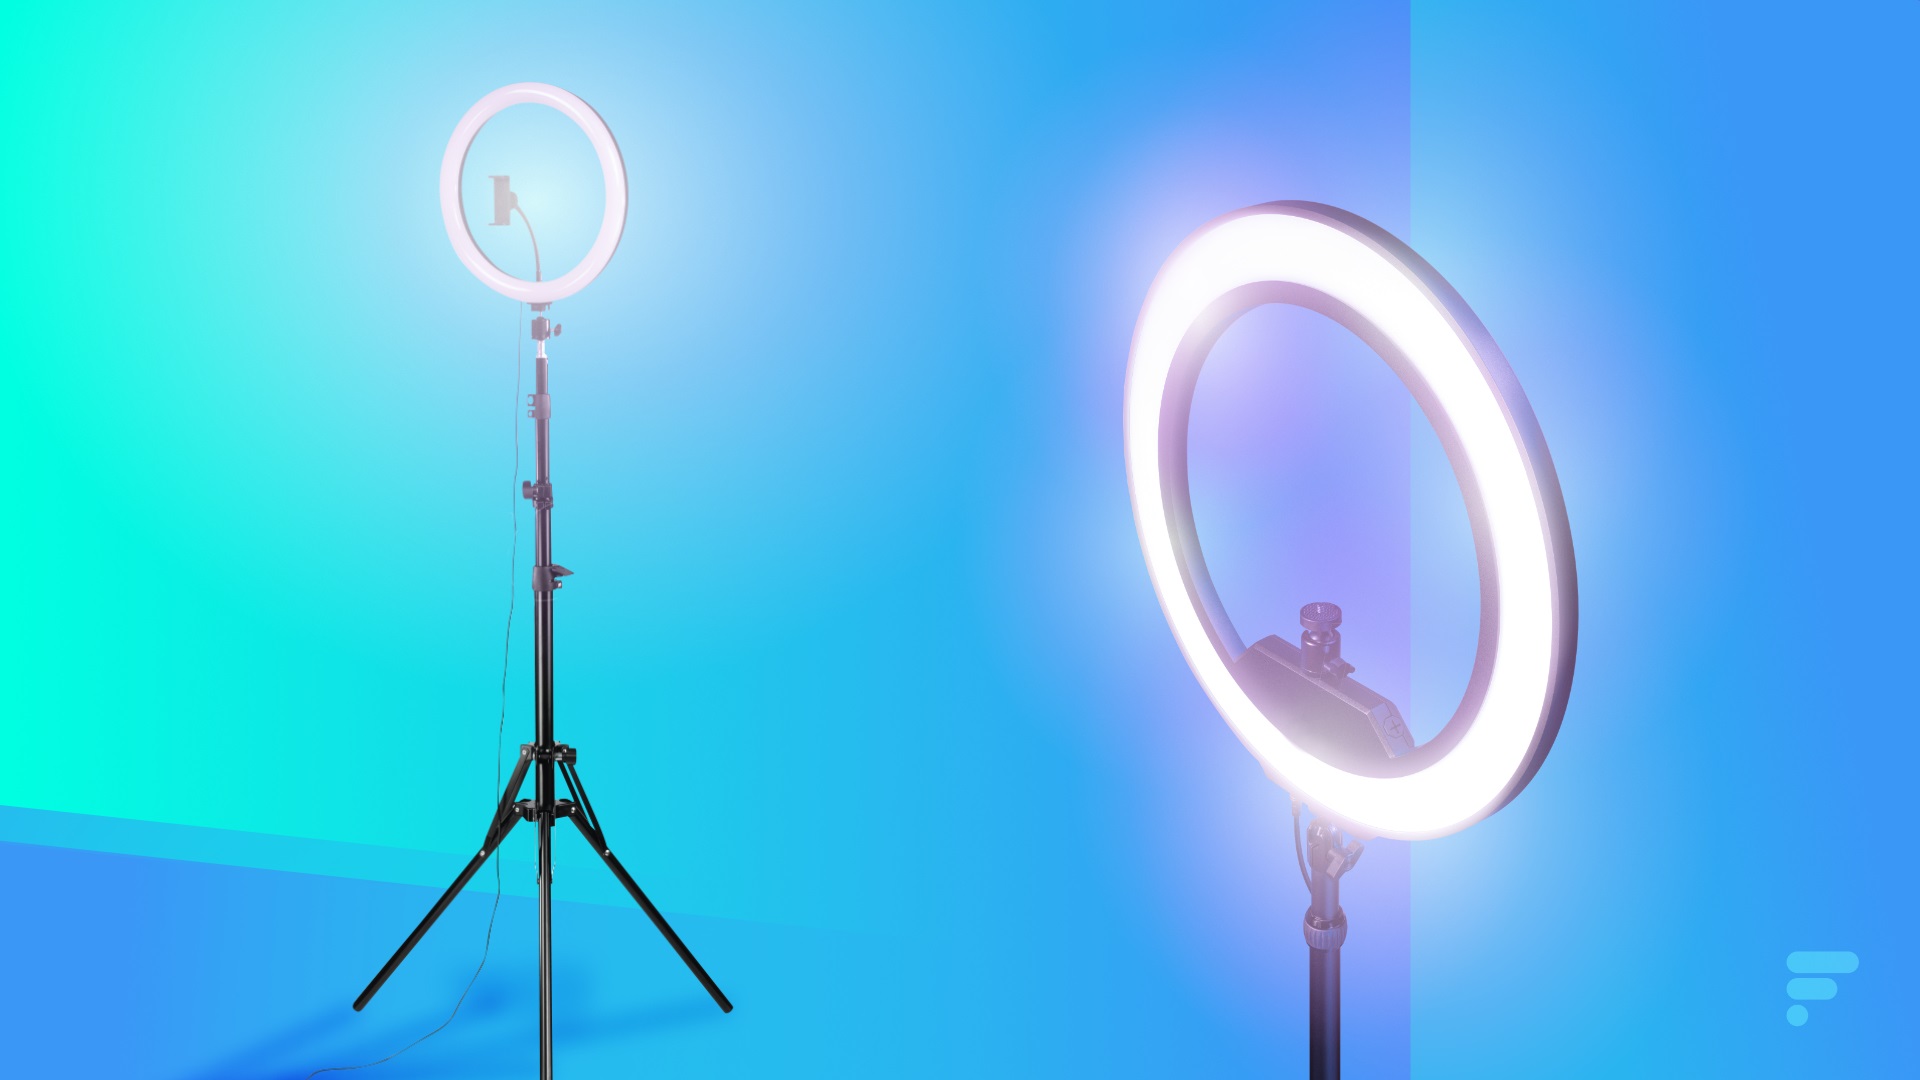 Acheter Anneau lumineux LED pour Selfie, avec support de téléphone